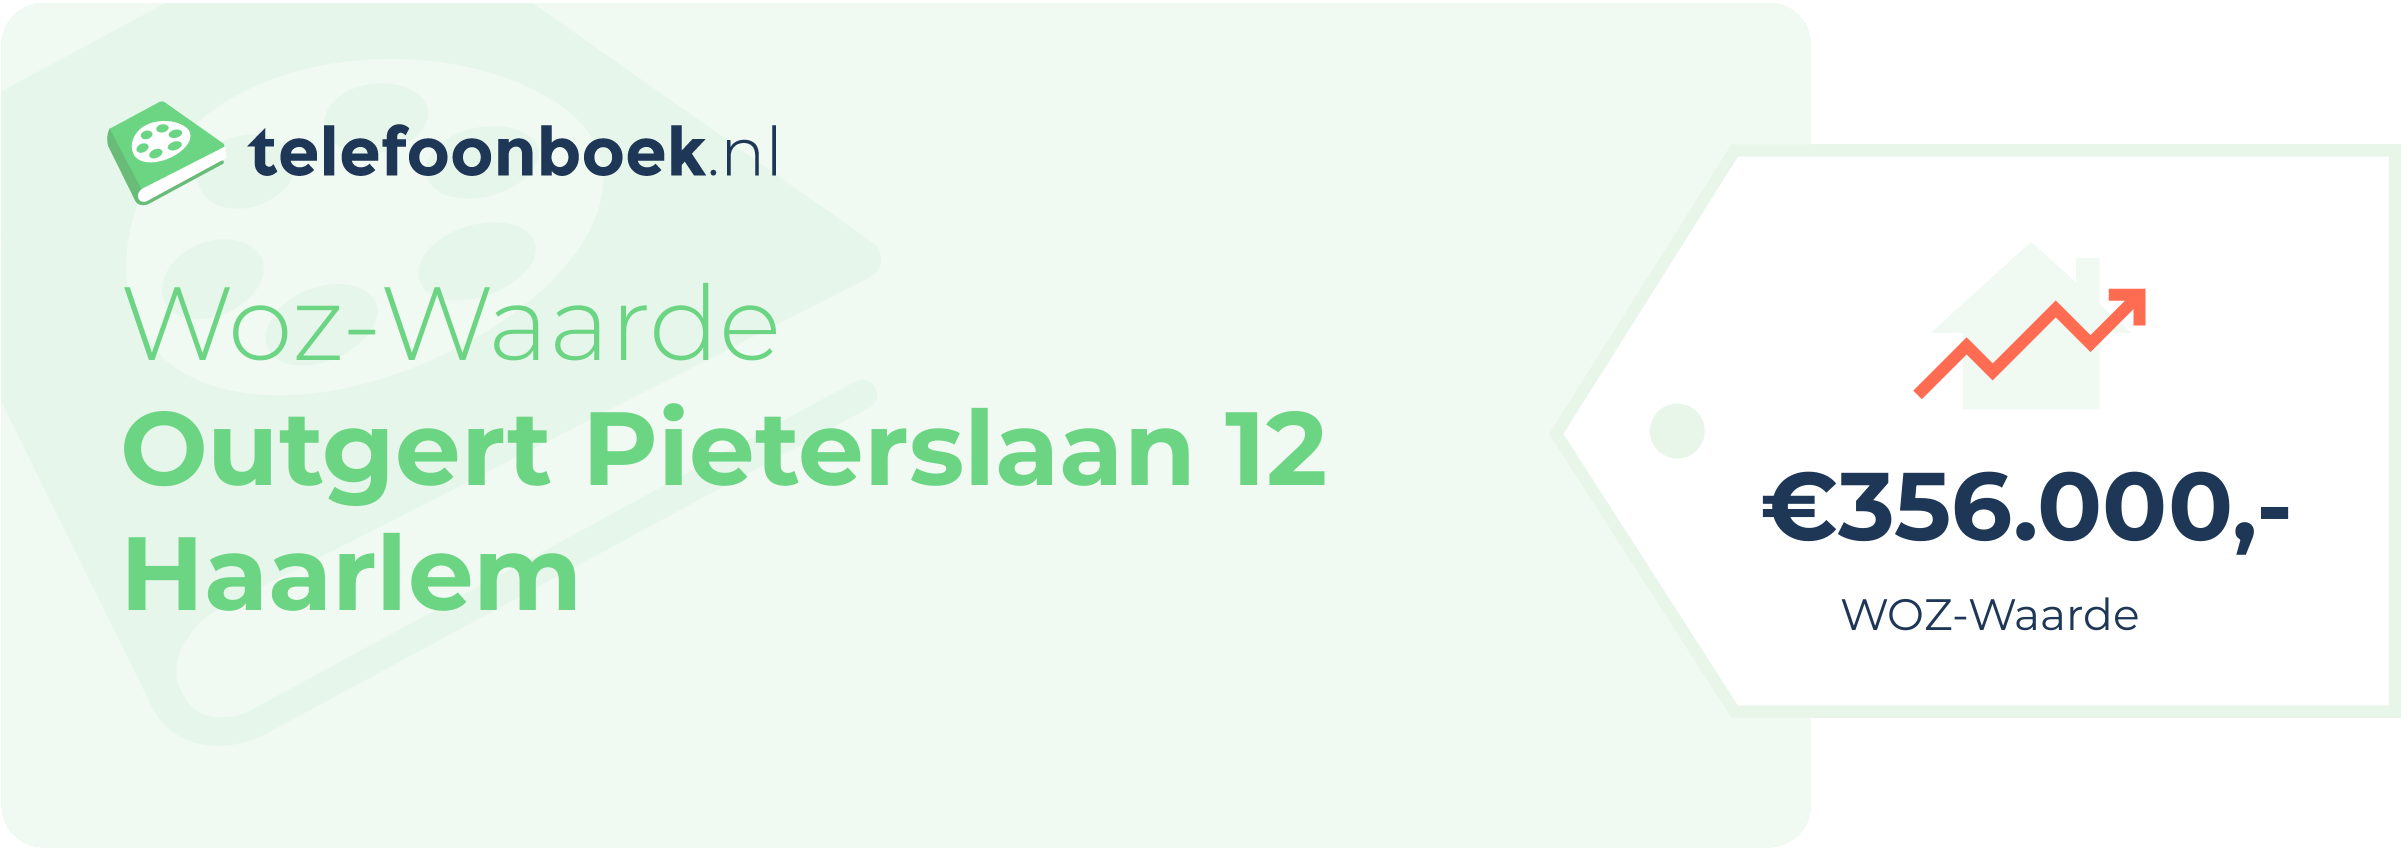 WOZ-waarde Outgert Pieterslaan 12 Haarlem